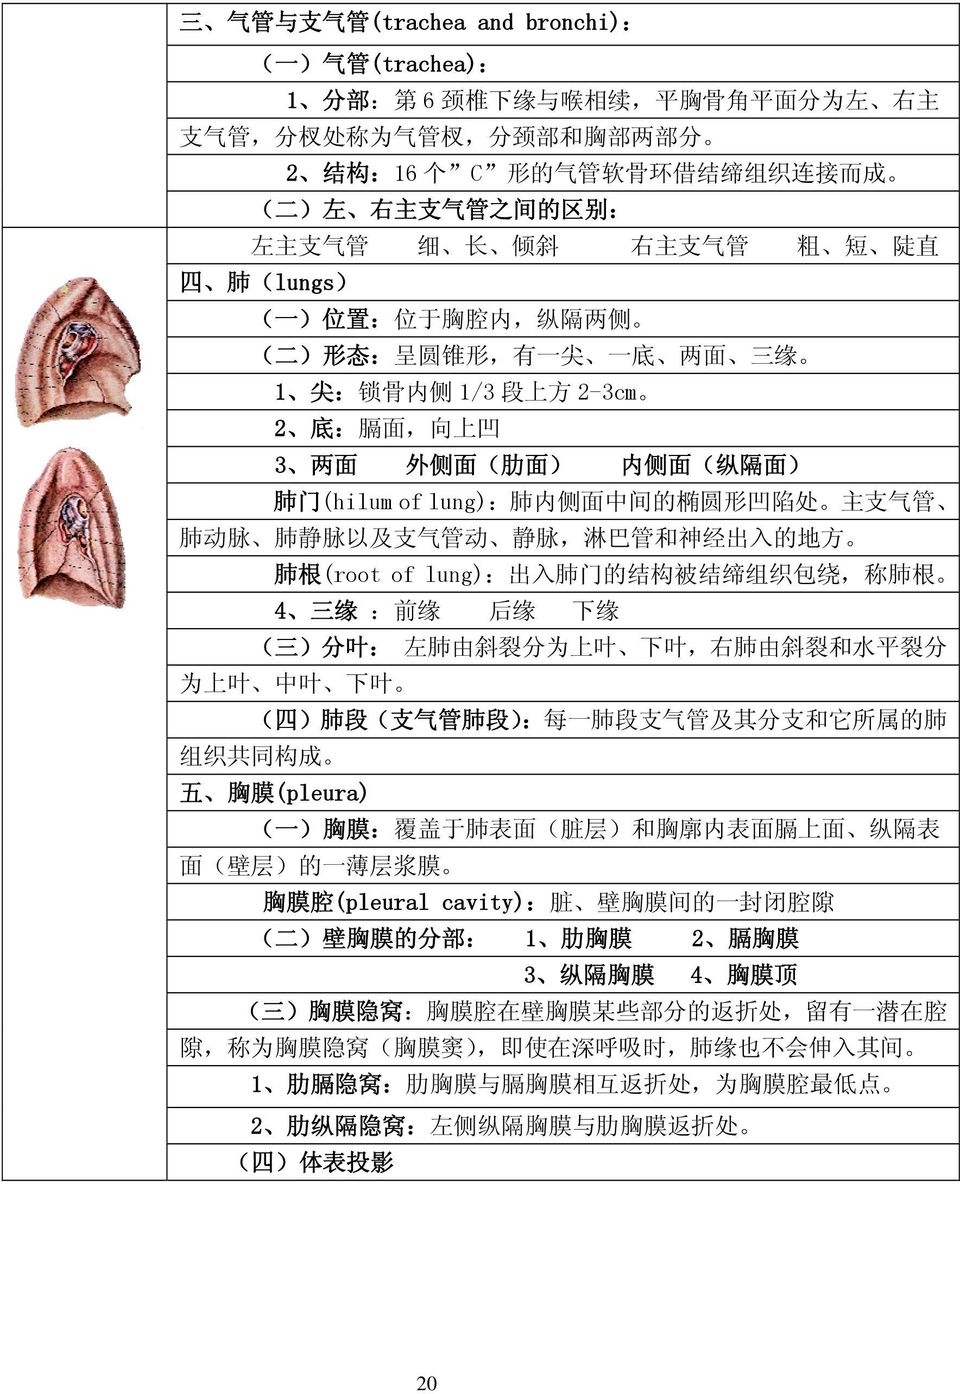 外 侧 面 ( 肋 面 ) 内 侧 面 ( 纵 隔 面 ) 肺 门 (hilum of lung): 肺 内 侧 面 中 间 的 椭 圆 形 凹 陷 处 主 支 气 管 肺 动 脉 肺 静 脉 以 及 支 气 管 动 静 脉, 淋 巴 管 和 神 经 出 入 的 地 方 肺 根 (root of lung): 出 入 肺 门 的 结 构 被 结 缔 组 织 包 绕, 称 肺 根 4 三 缘 :